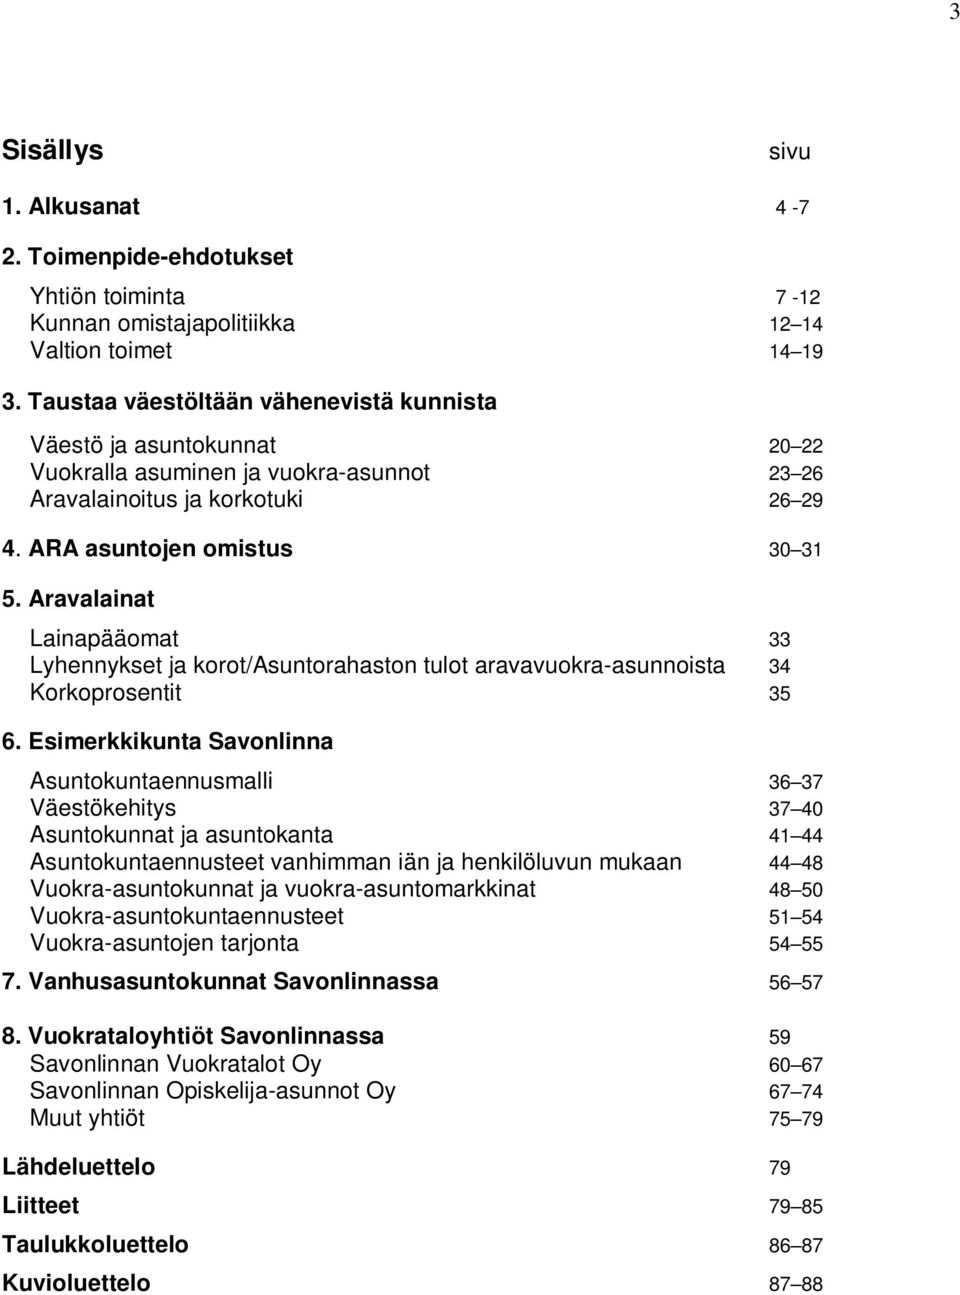 Aravalainat Lainapääomat 33 Lyhennykset ja korot/asuntorahaston tulot aravavuokra-asunnoista 34 Korkoprosentit 35 6.